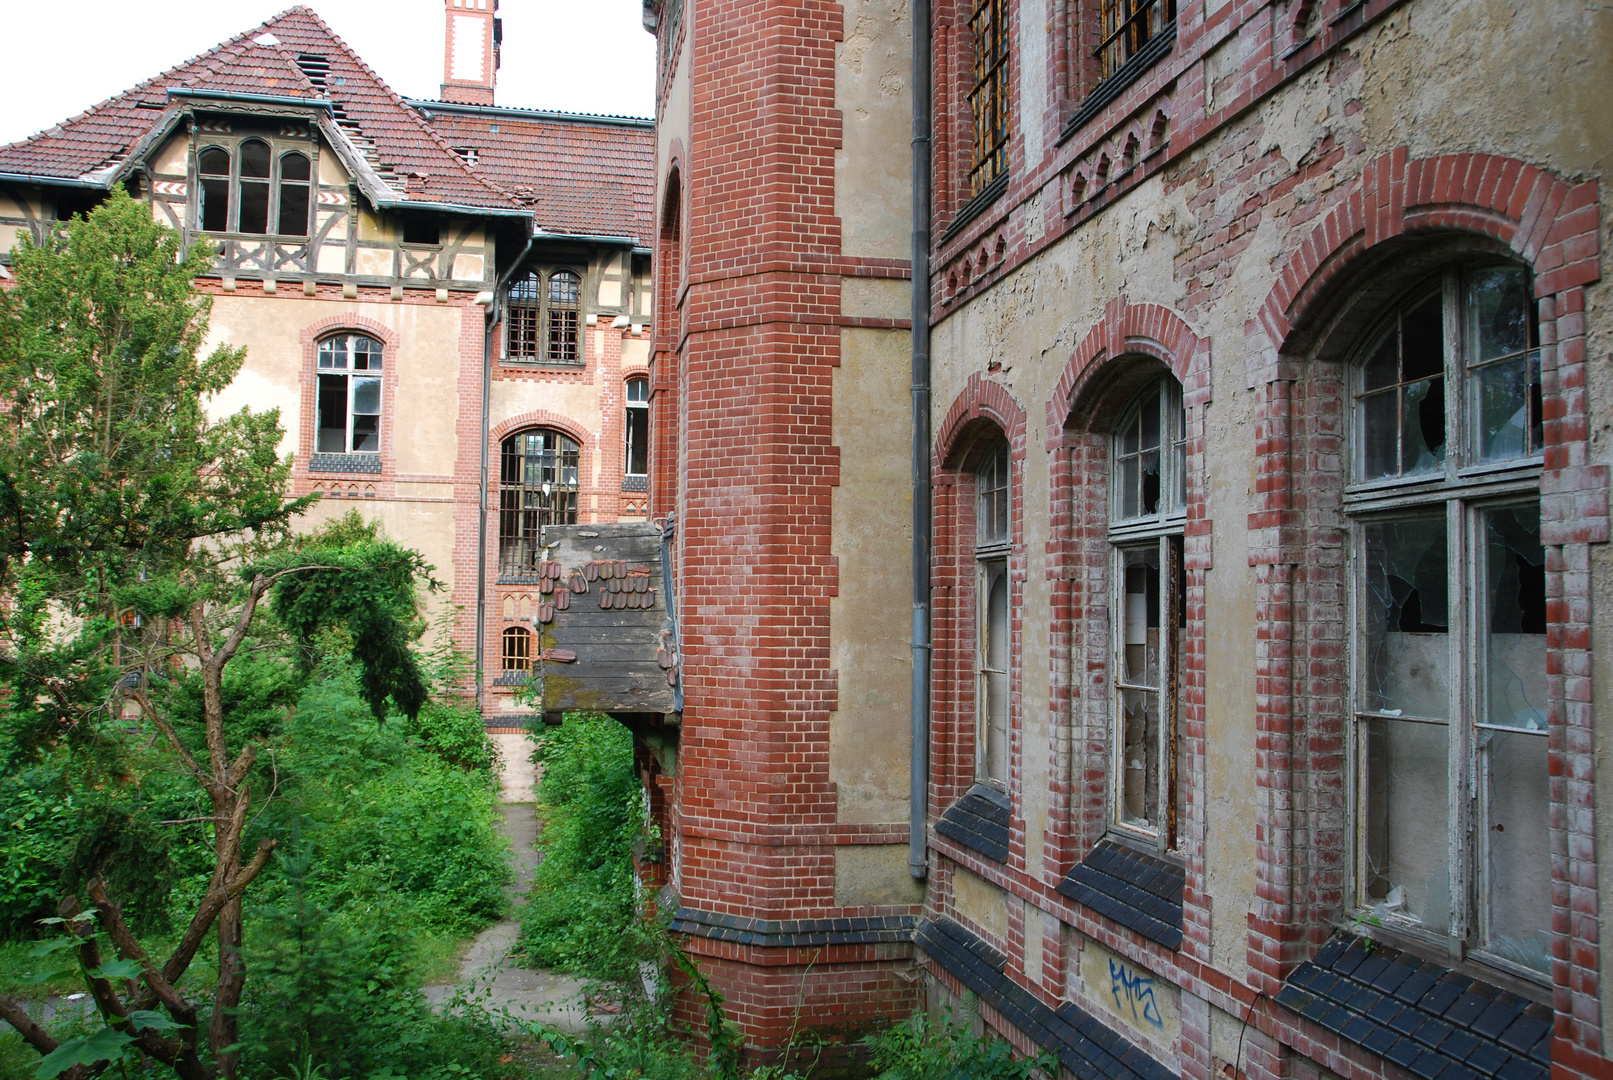 Geisterhaus 2